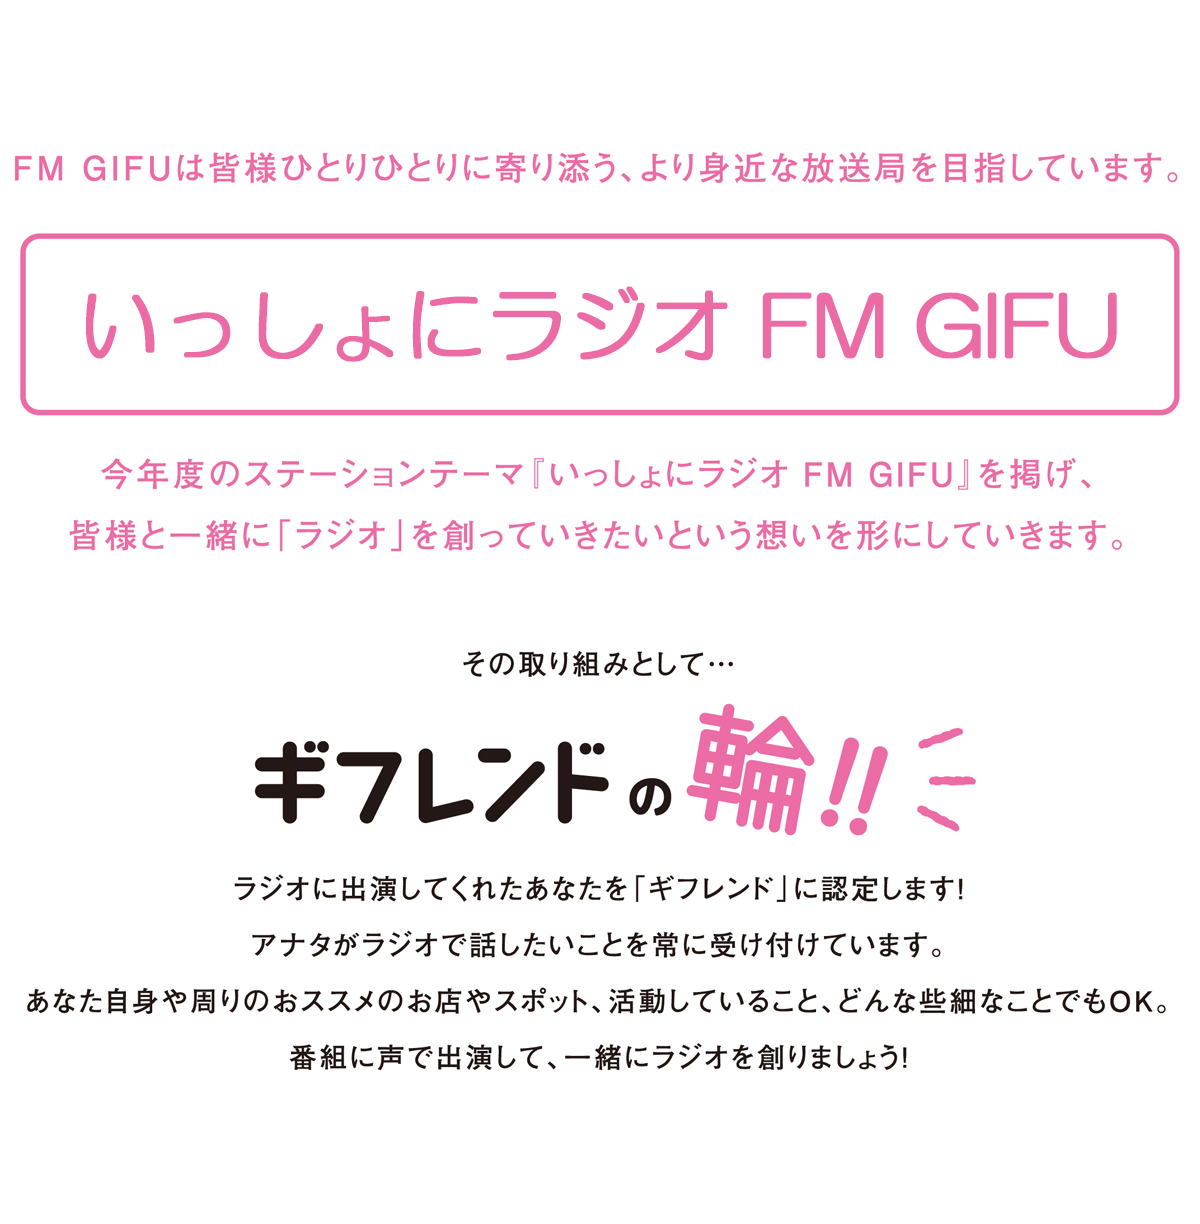 FM GIFU ステーションテーマ